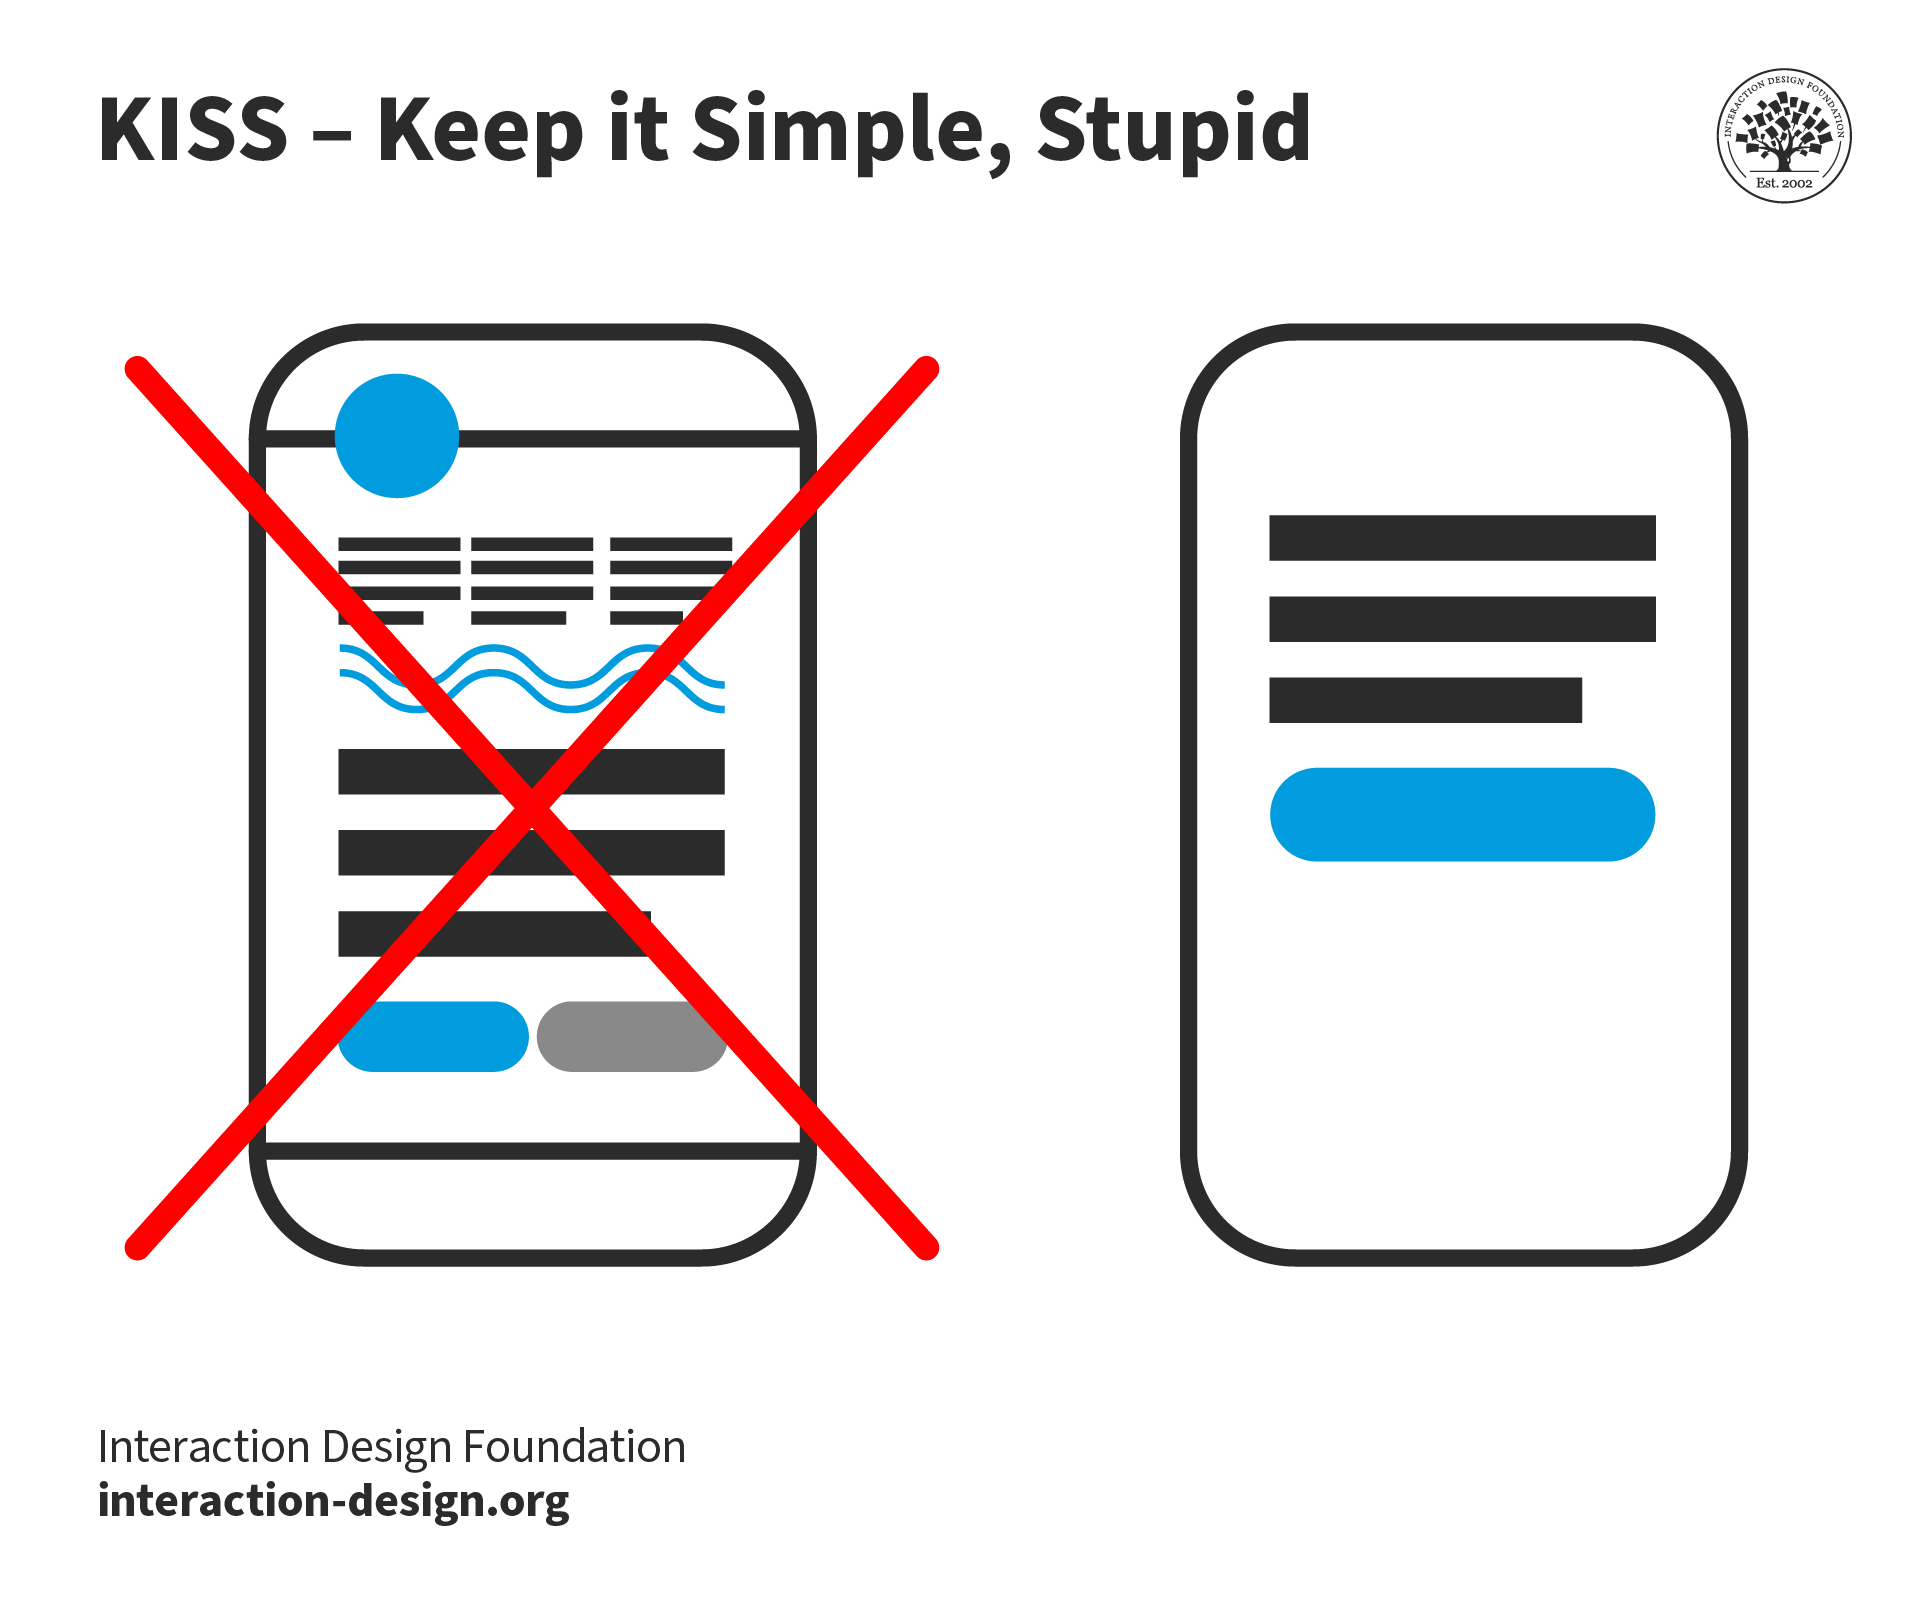 KISS - Keep it Simple, Stupid illustrated as a simple smartphone app design